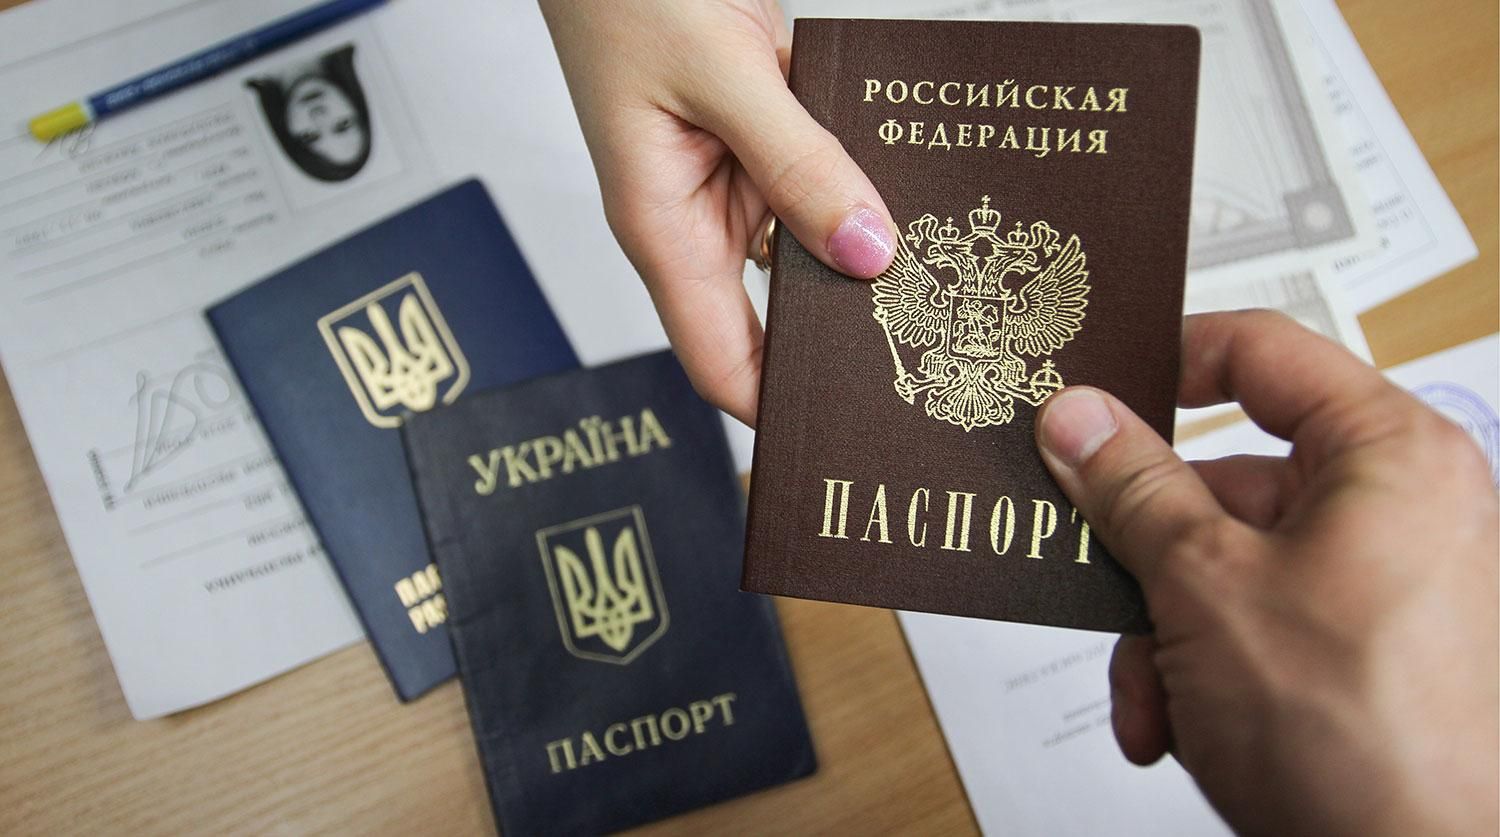 Выдача российских паспортов в других регионах Украины – лишь вопрос времени, – Климкин